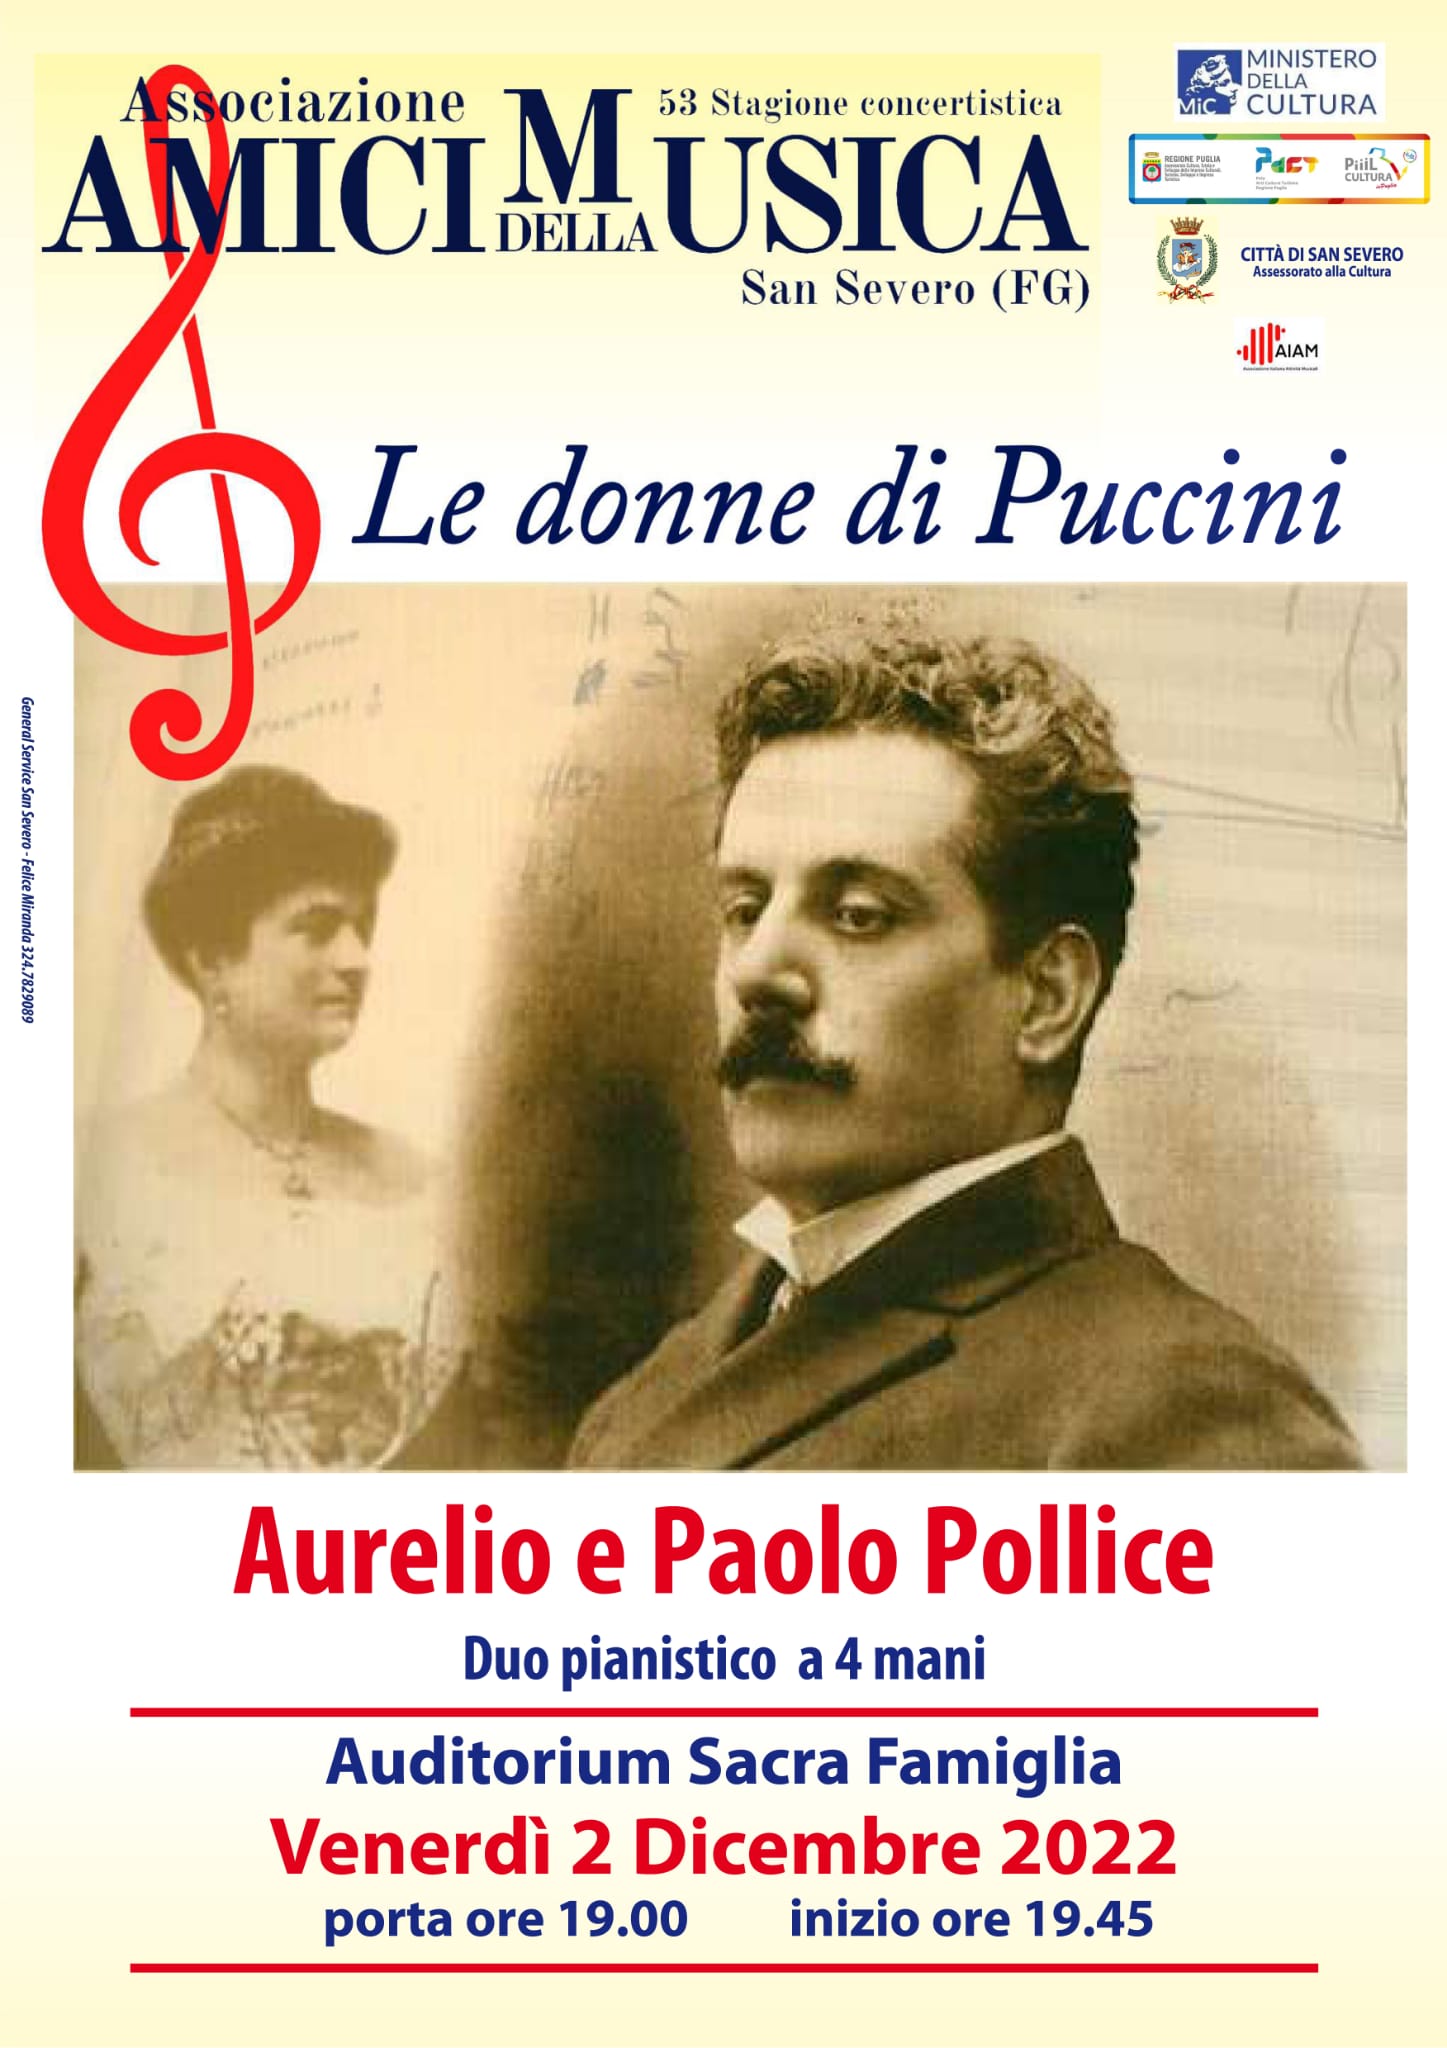 AMICI DELLA MUSICA – Le donne di Puccini. OMNIA: non solo medicina